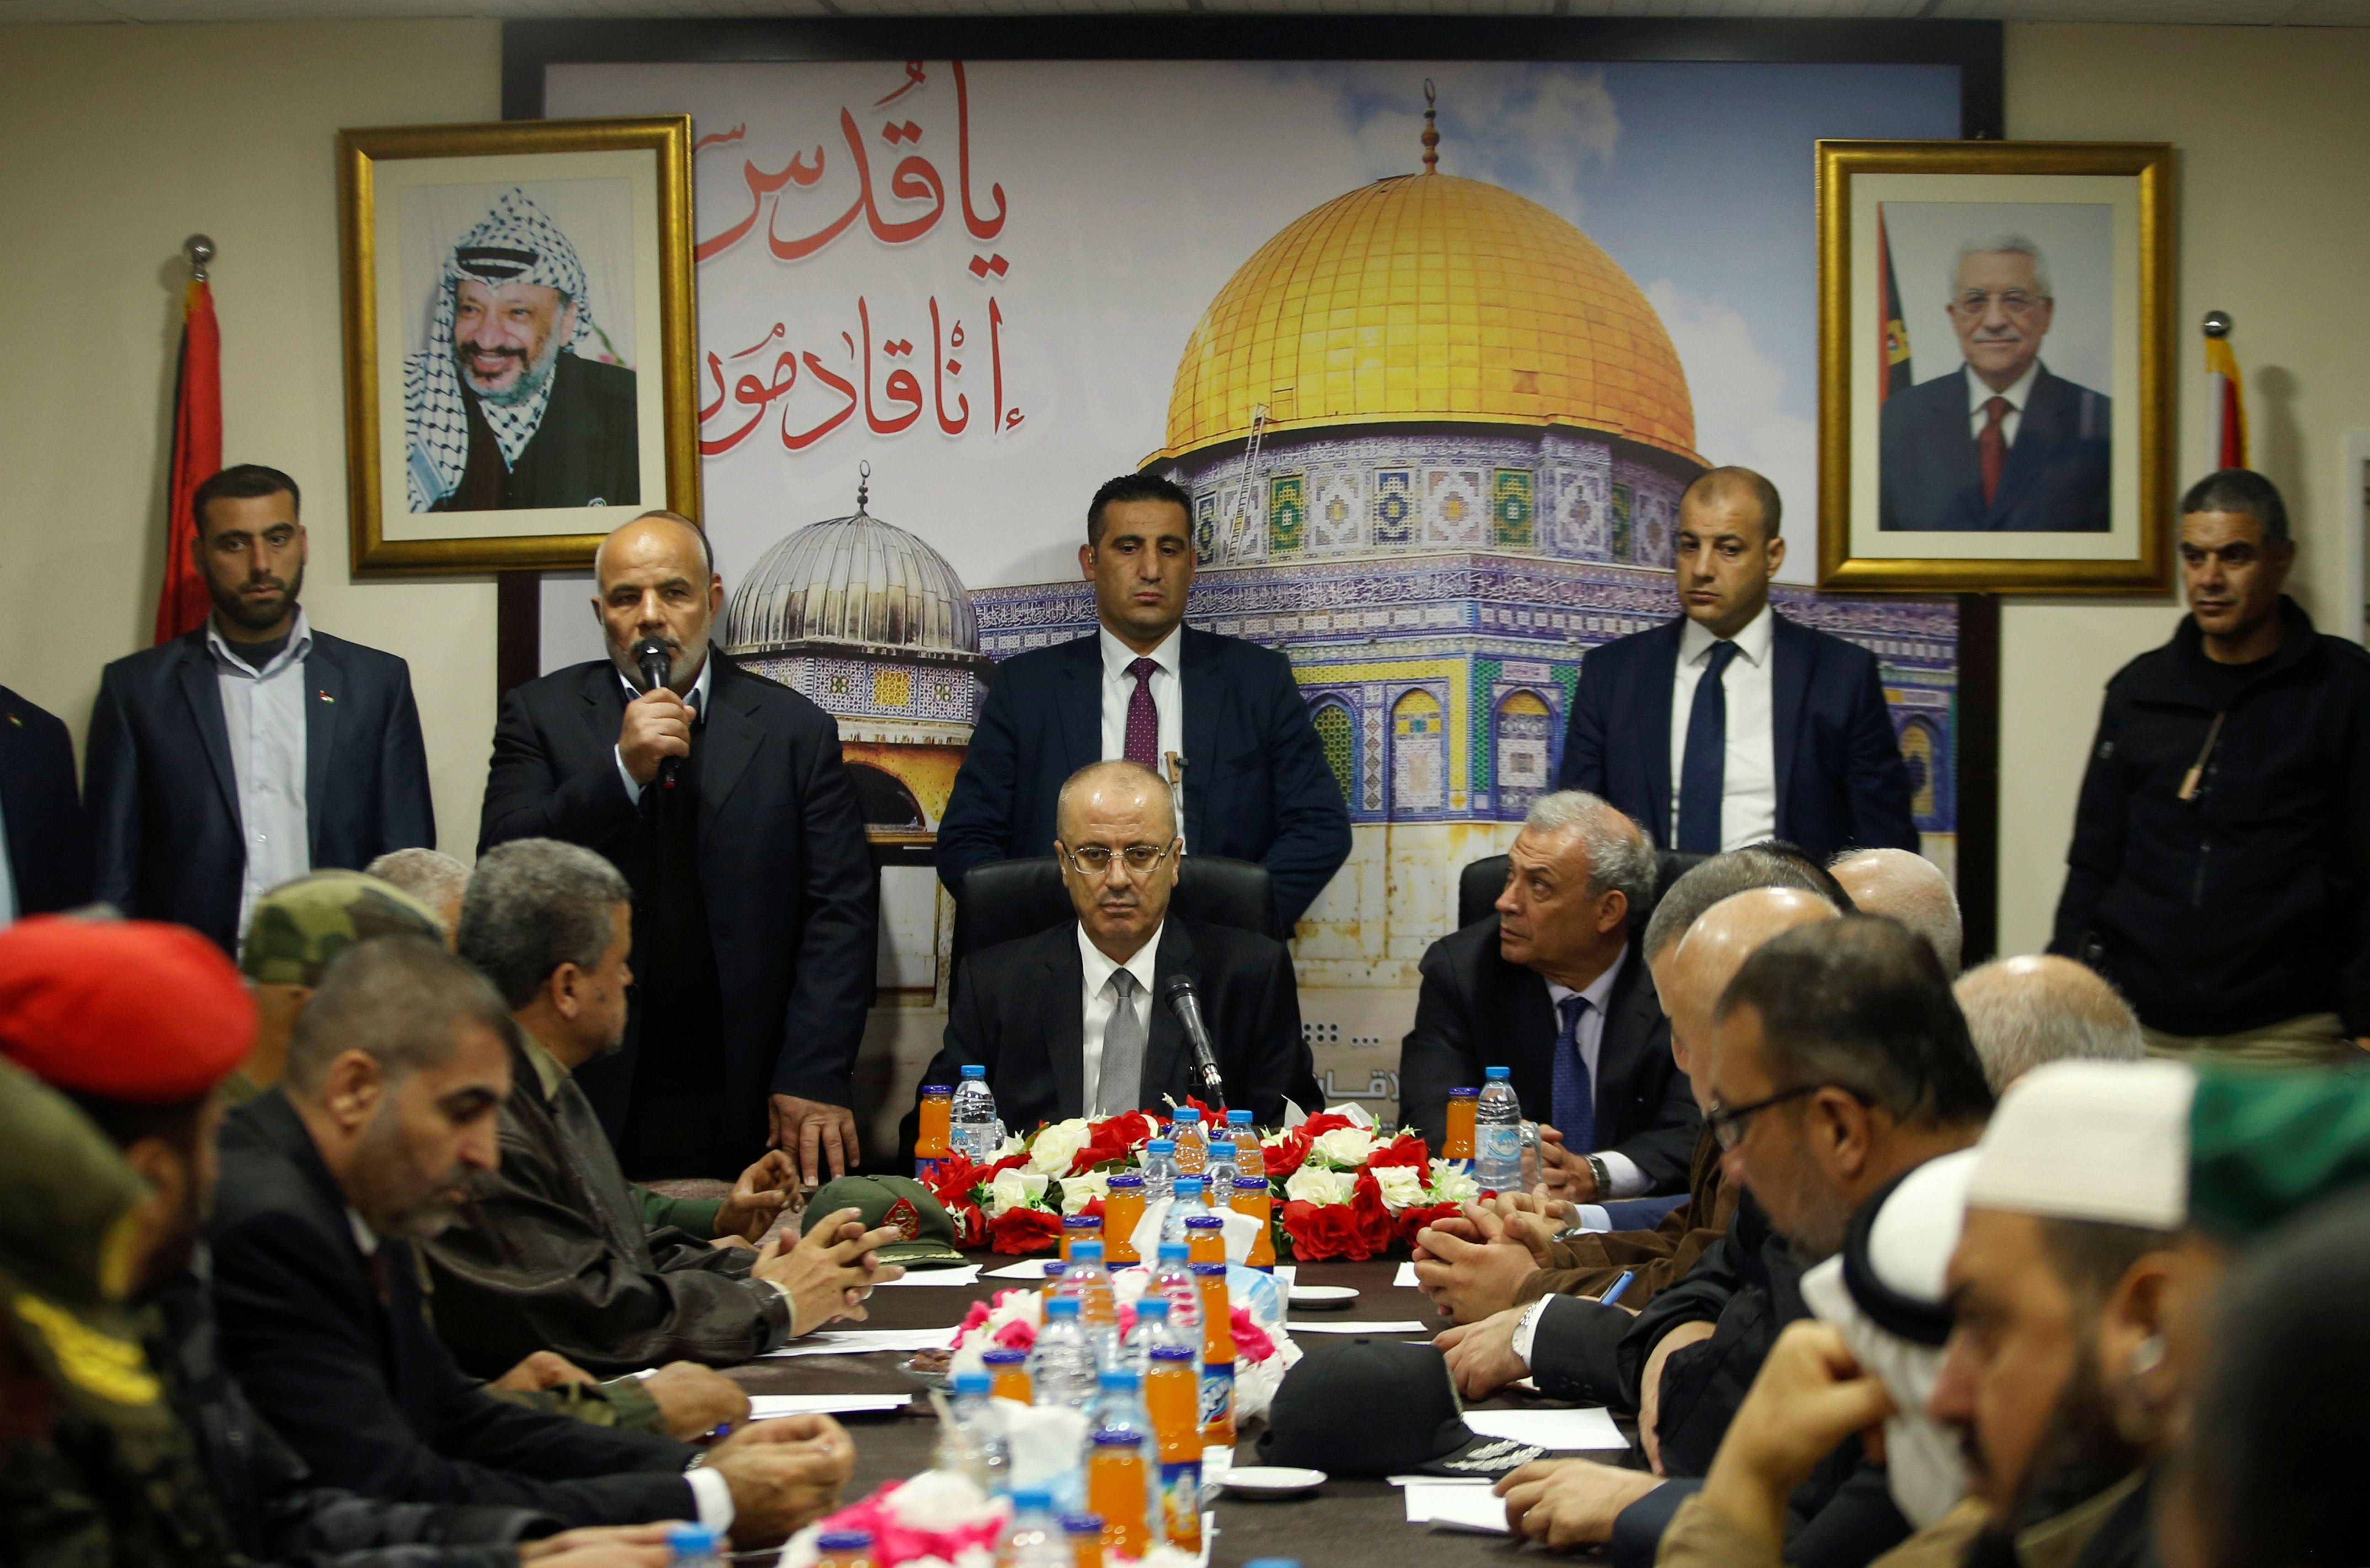 Los palestinos formaron el actual gobierno de la Autoridad Palestina en 2014 con el apoyo de Fatah y Hamas.